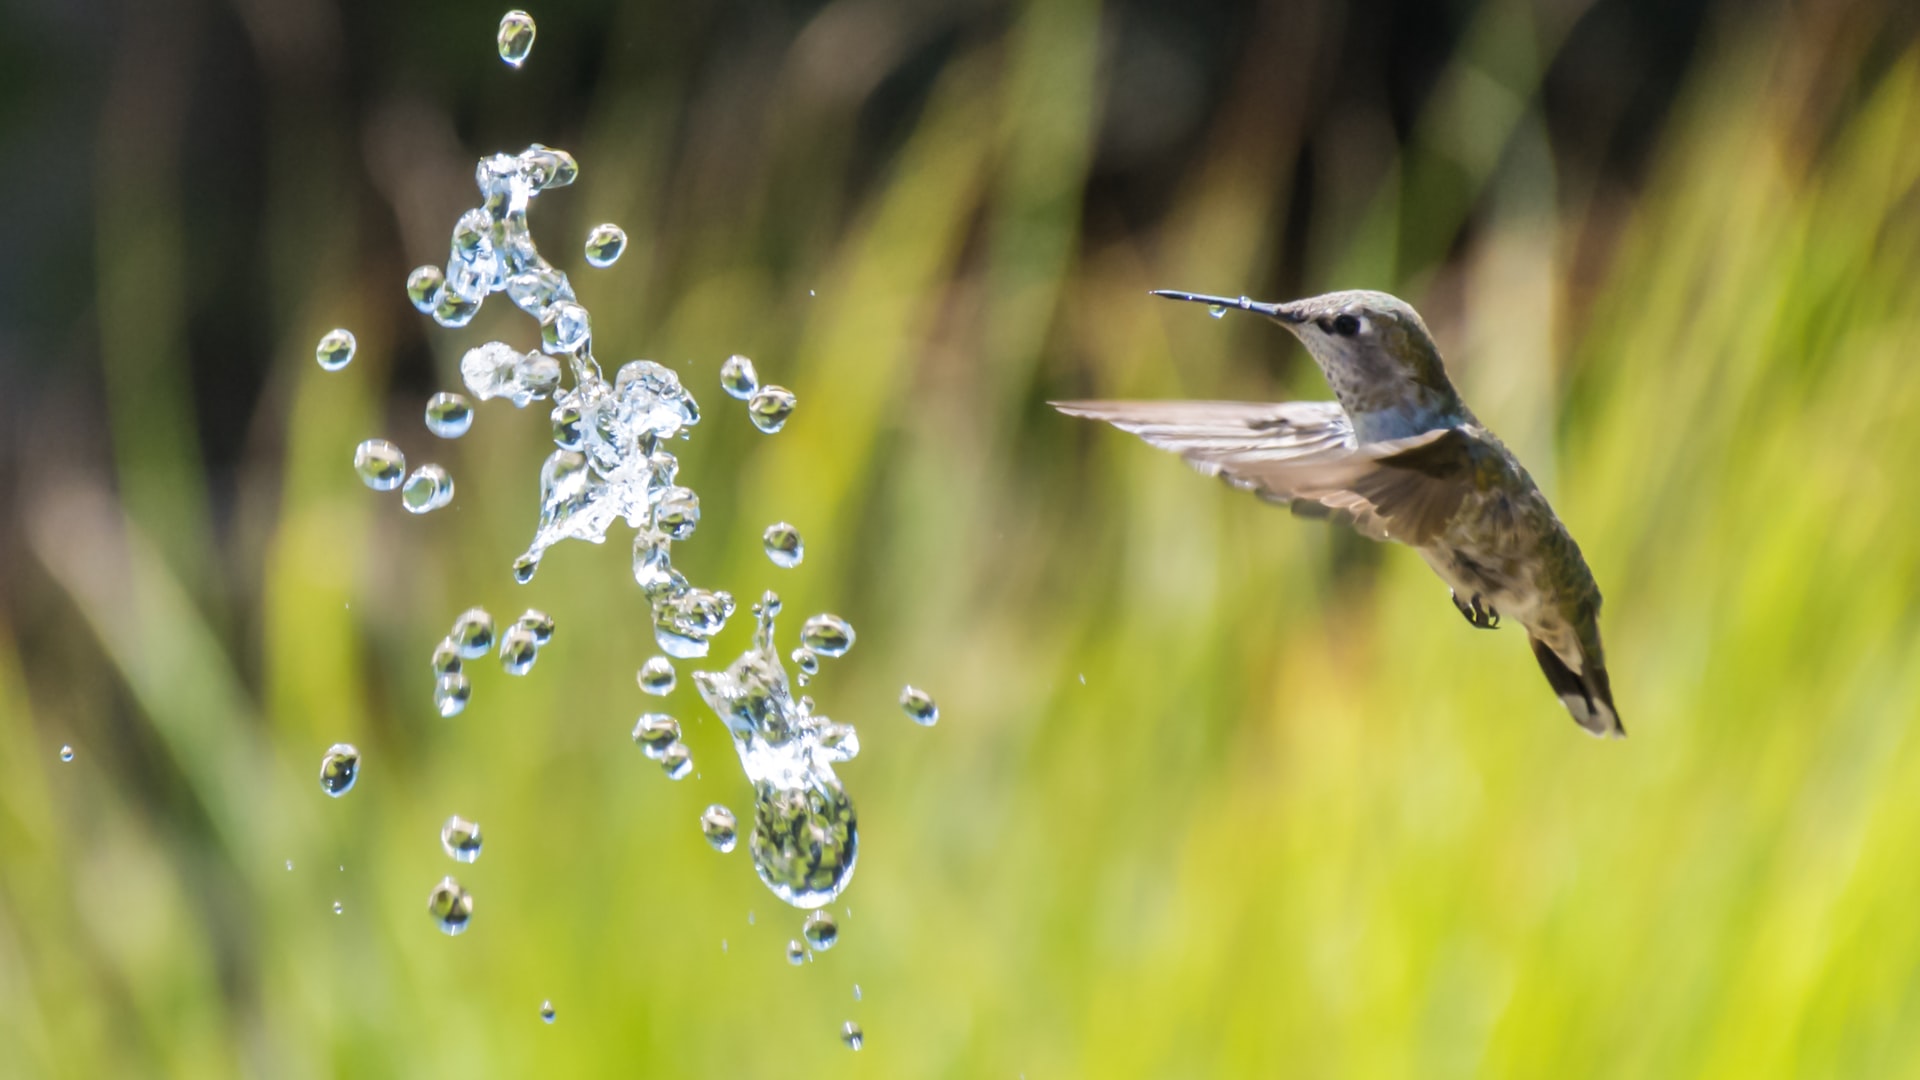 Hummingbird and splash of water